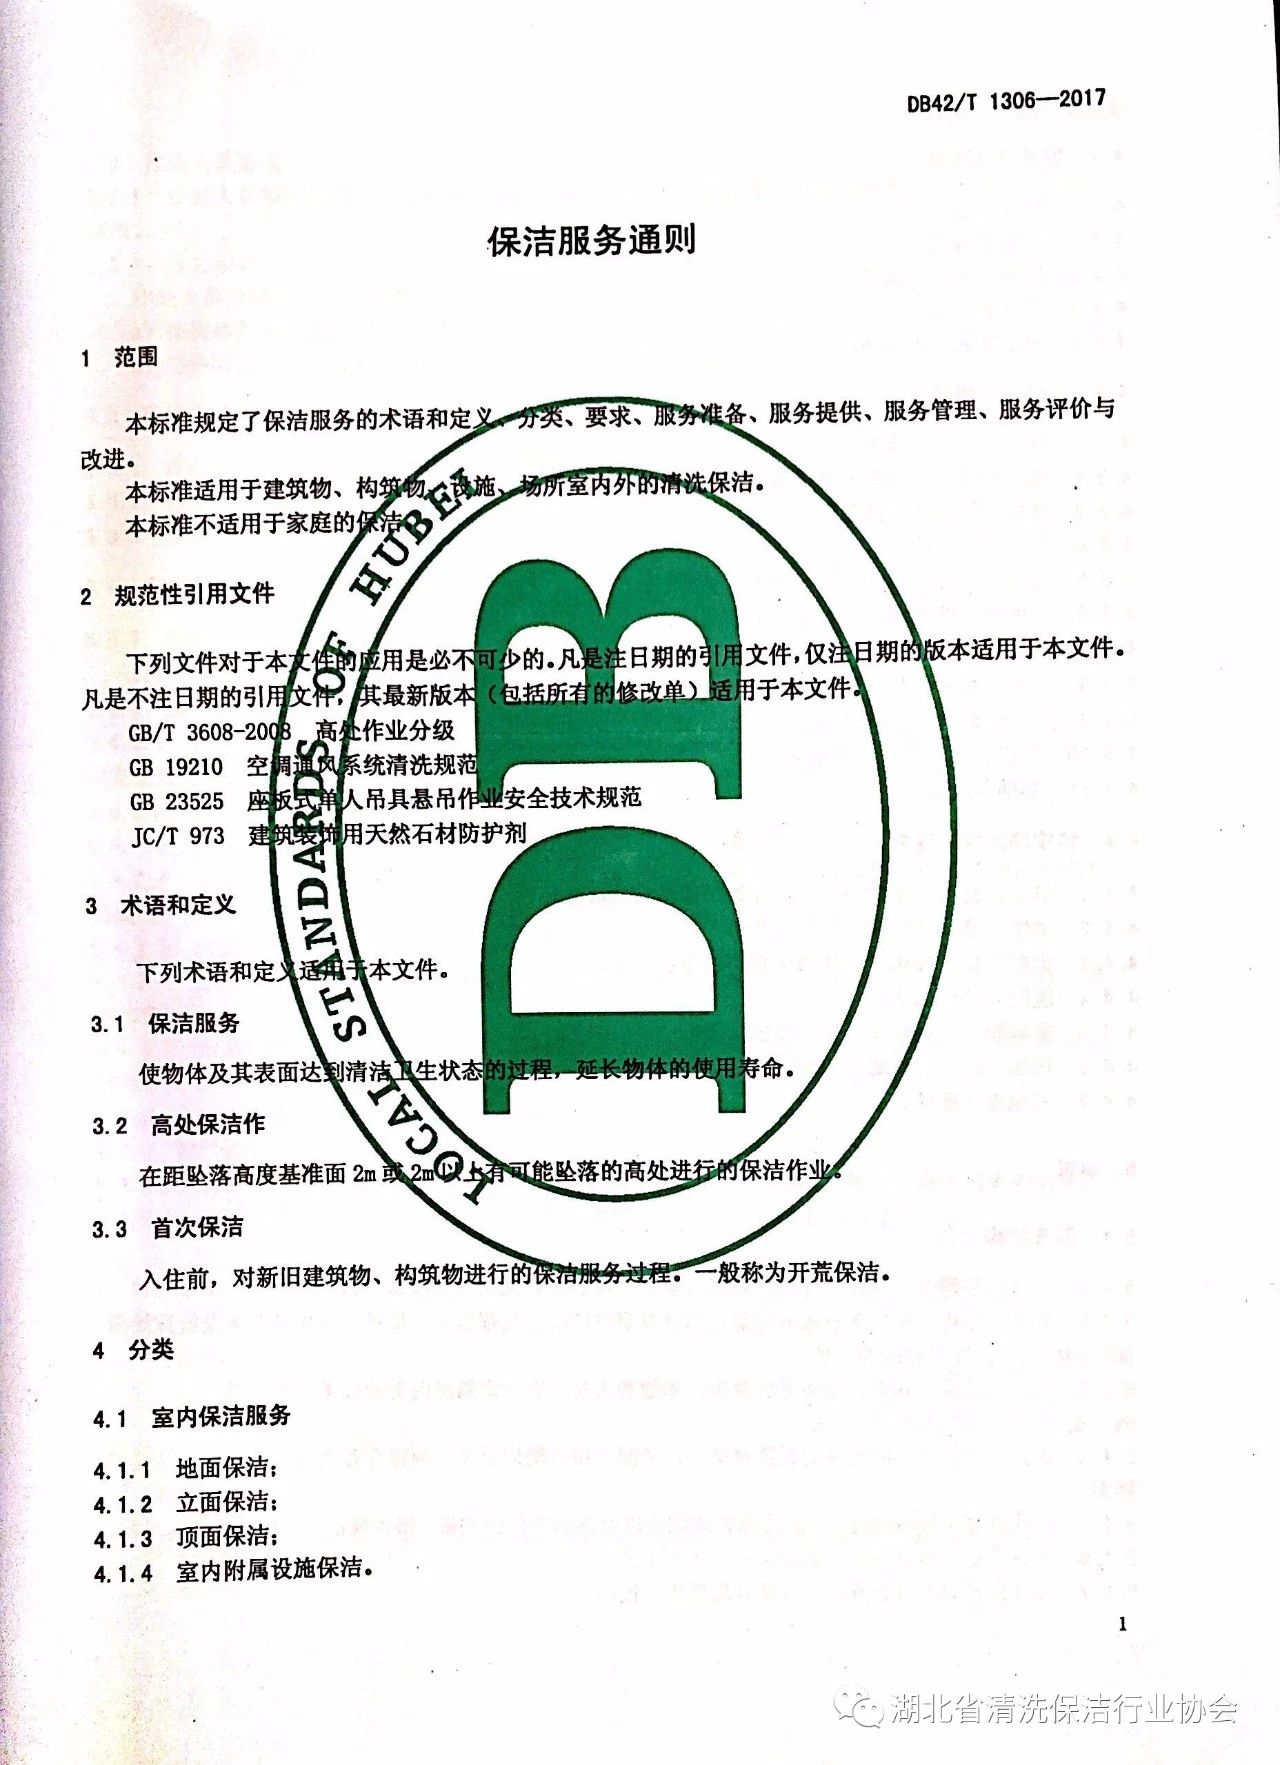 湖北省清洗保洁行业协会第一部地方标准《保洁服务通则》颁布实施5.jpg